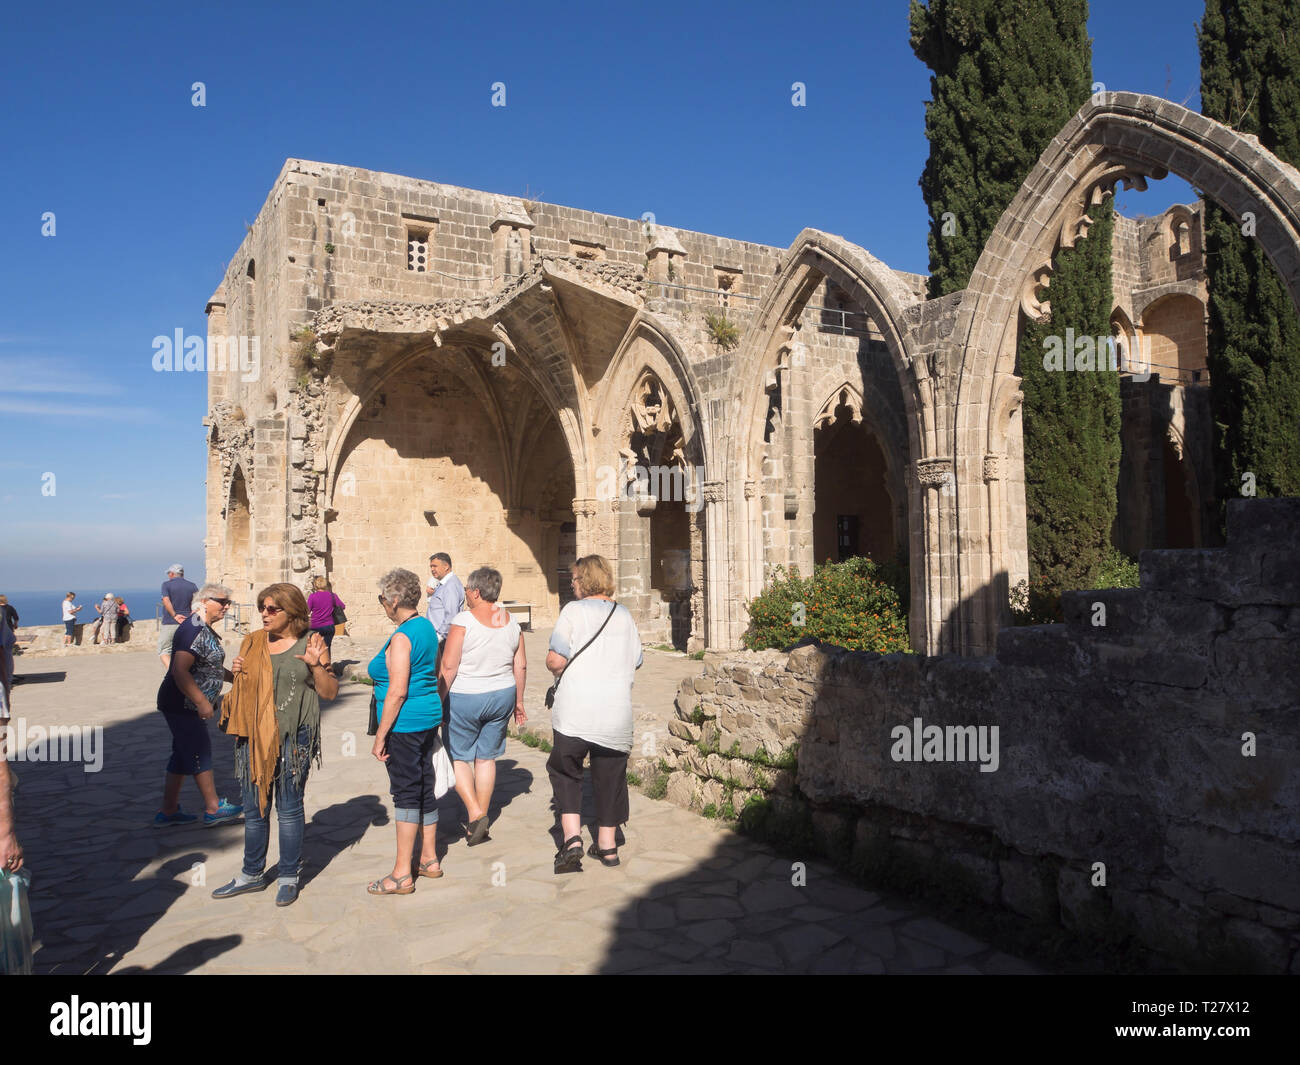 La Abadía de Bellapais una atracción turística en el norte de Chipre con ruinas góticas, una hermosa iglesia ortodoxa y vistas de la costa Foto de stock